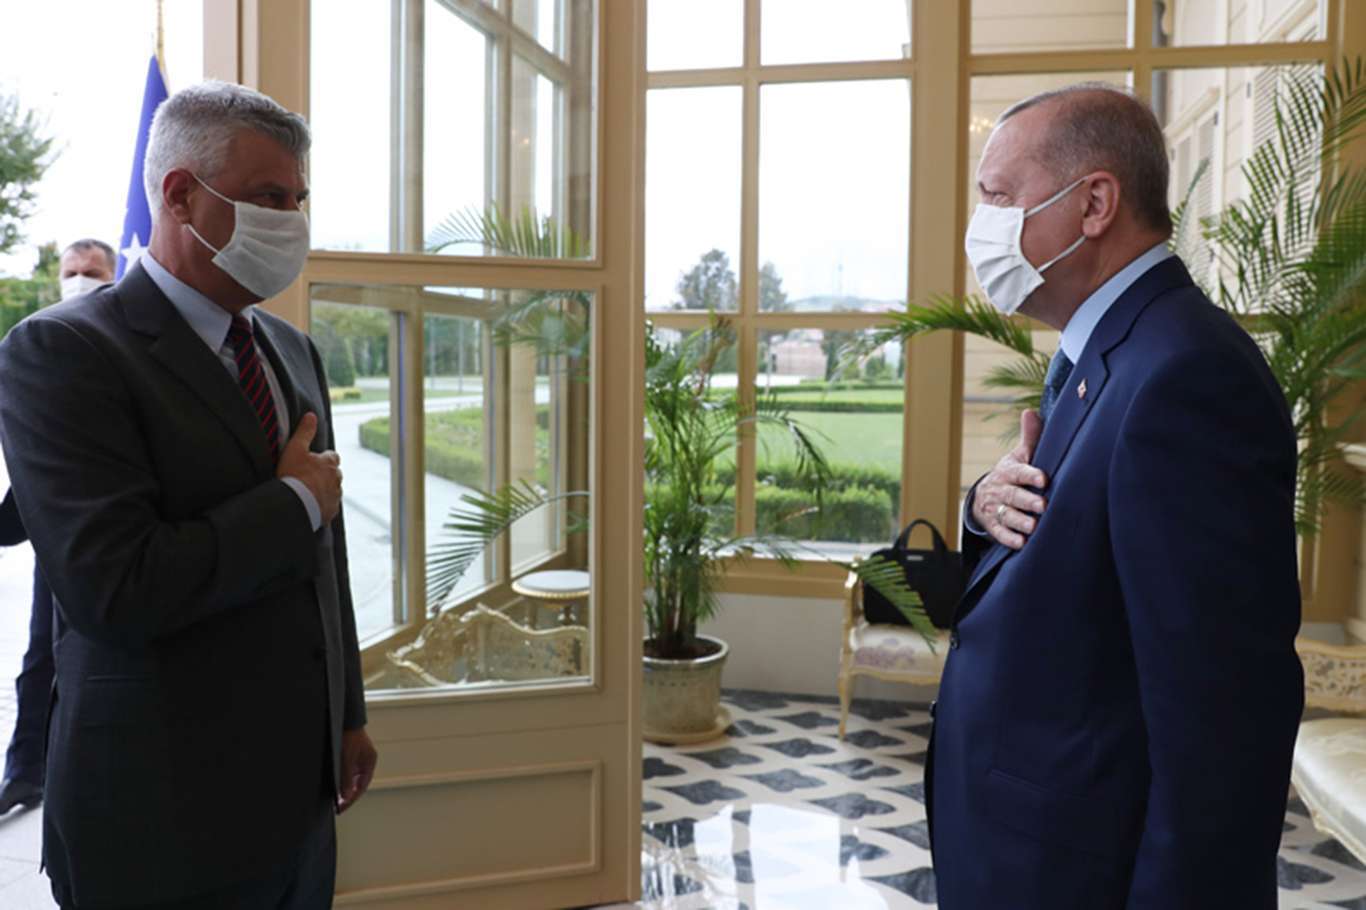 Erdoğan meets with President Thaçi of Kosovo